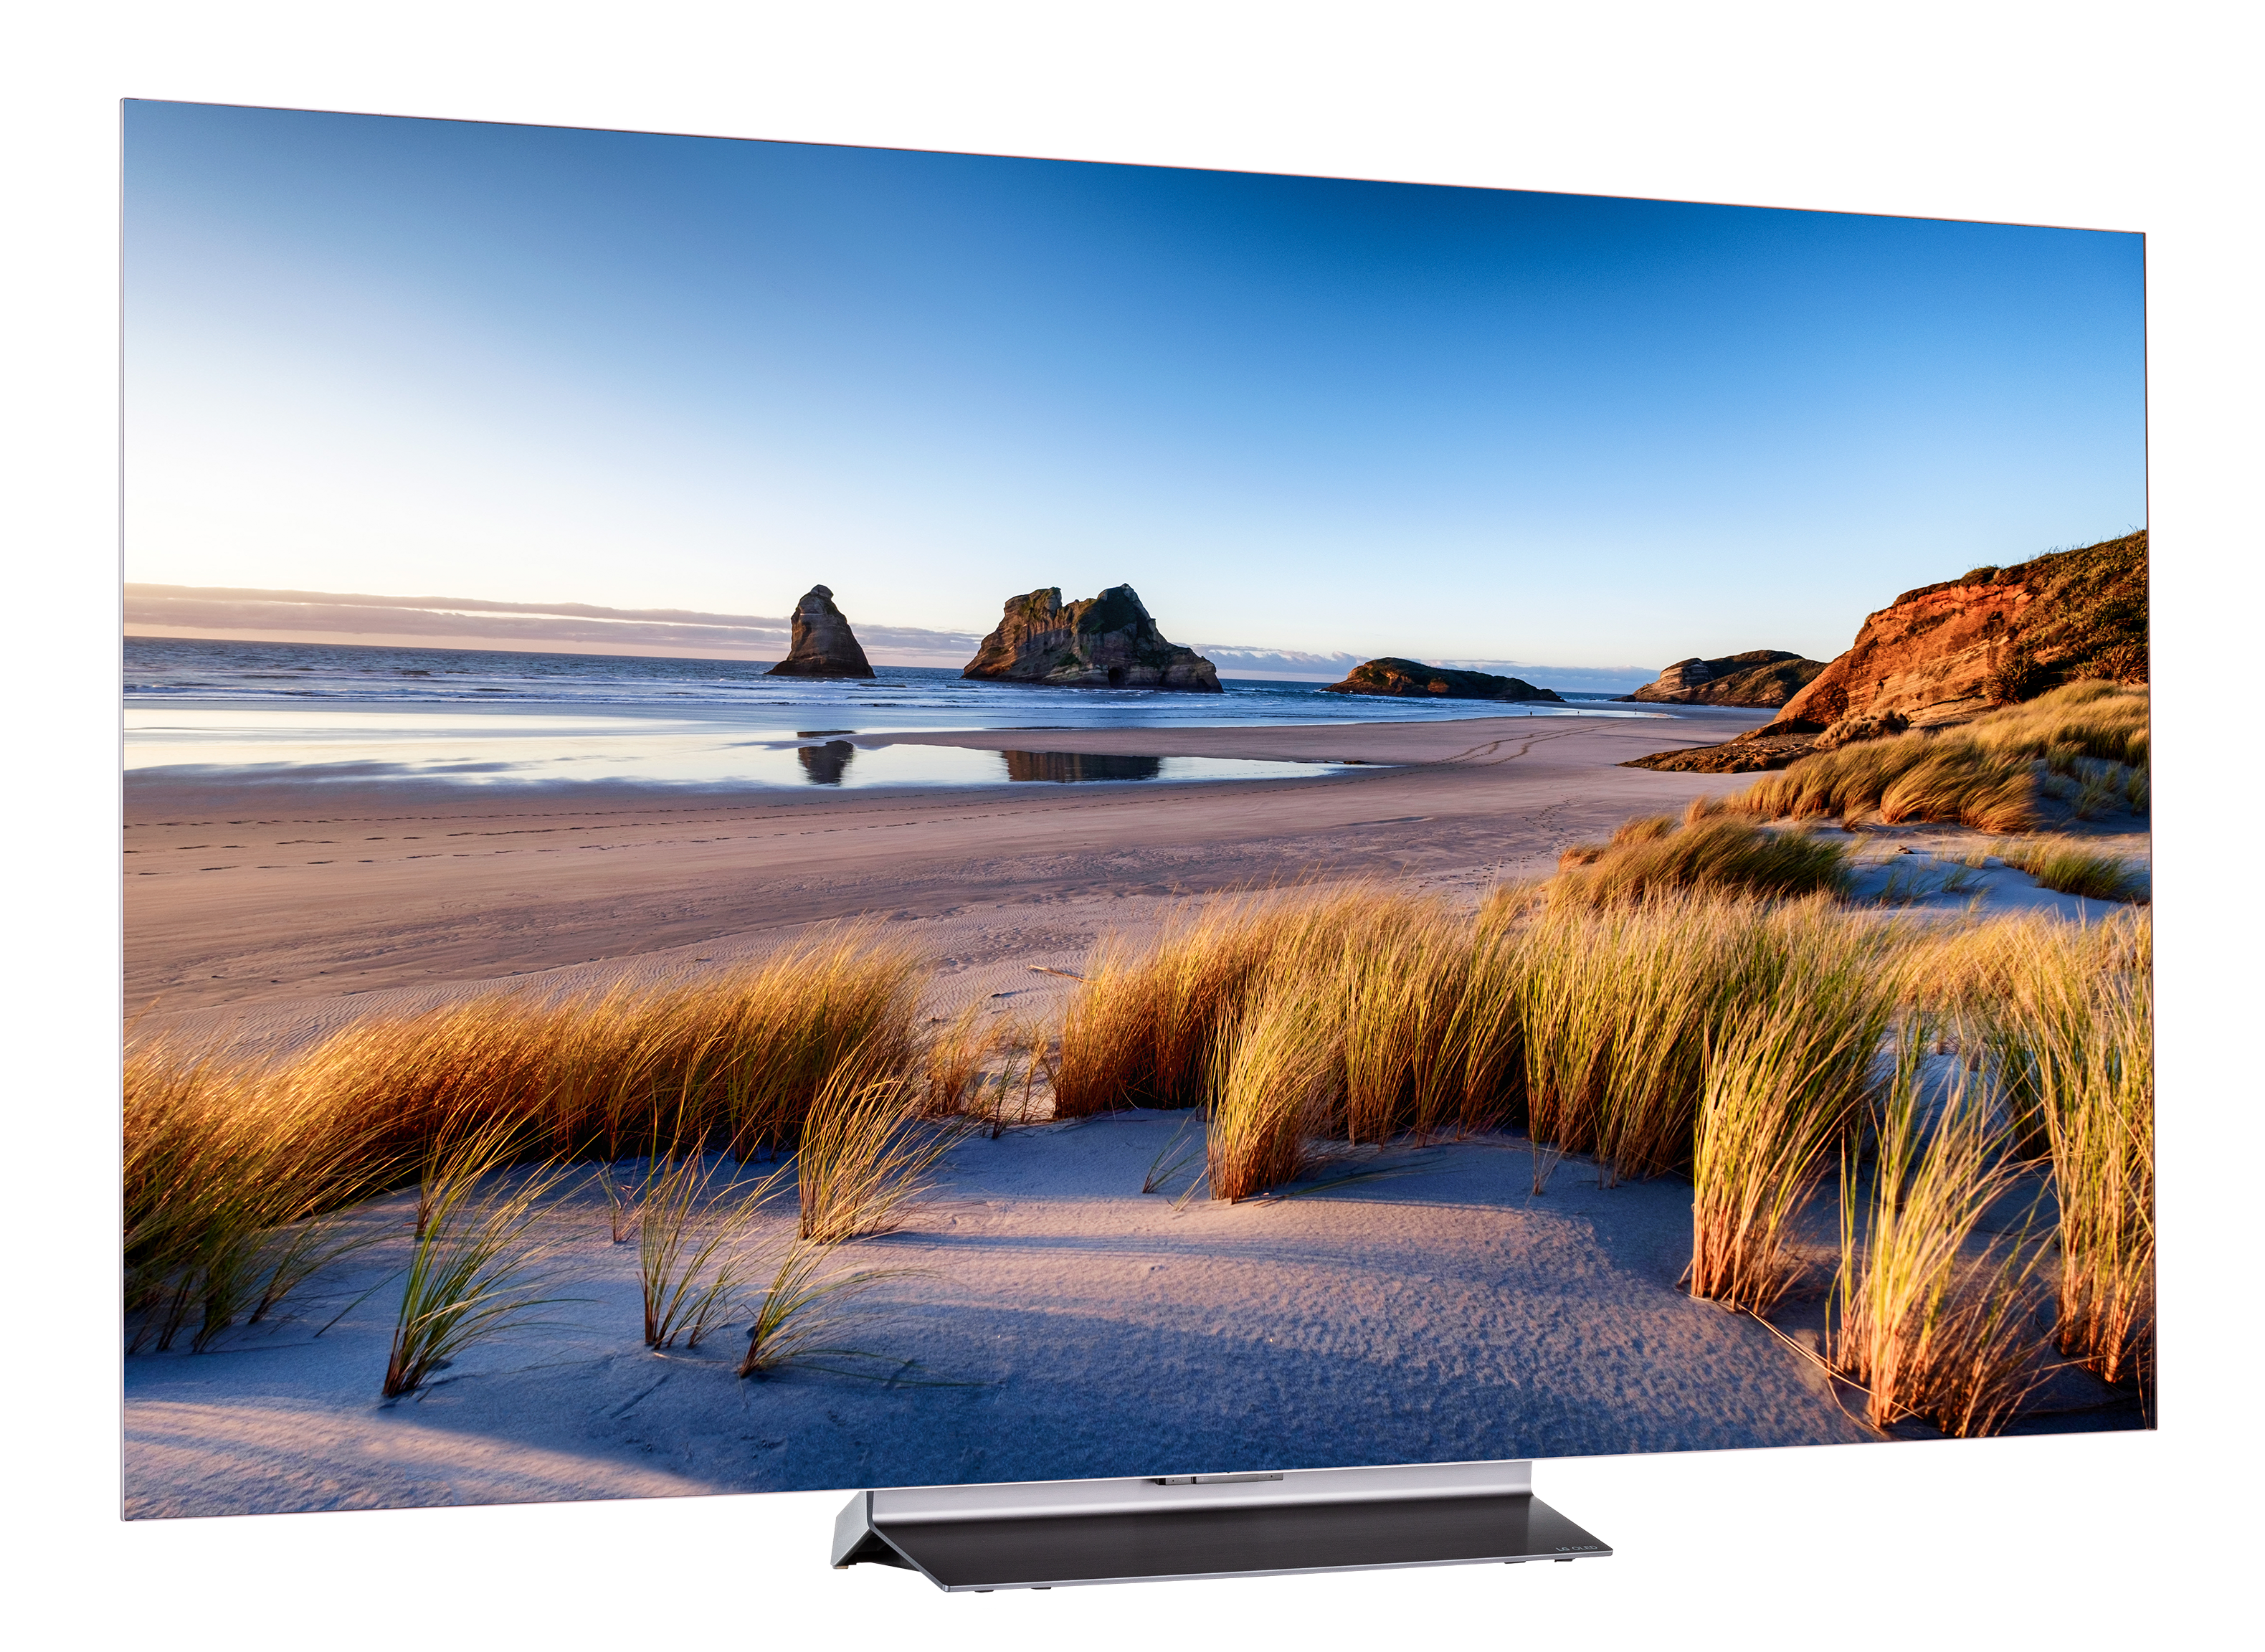 LG C2 65-Inch Evo OLED TV (OLED65C2PUA) Review